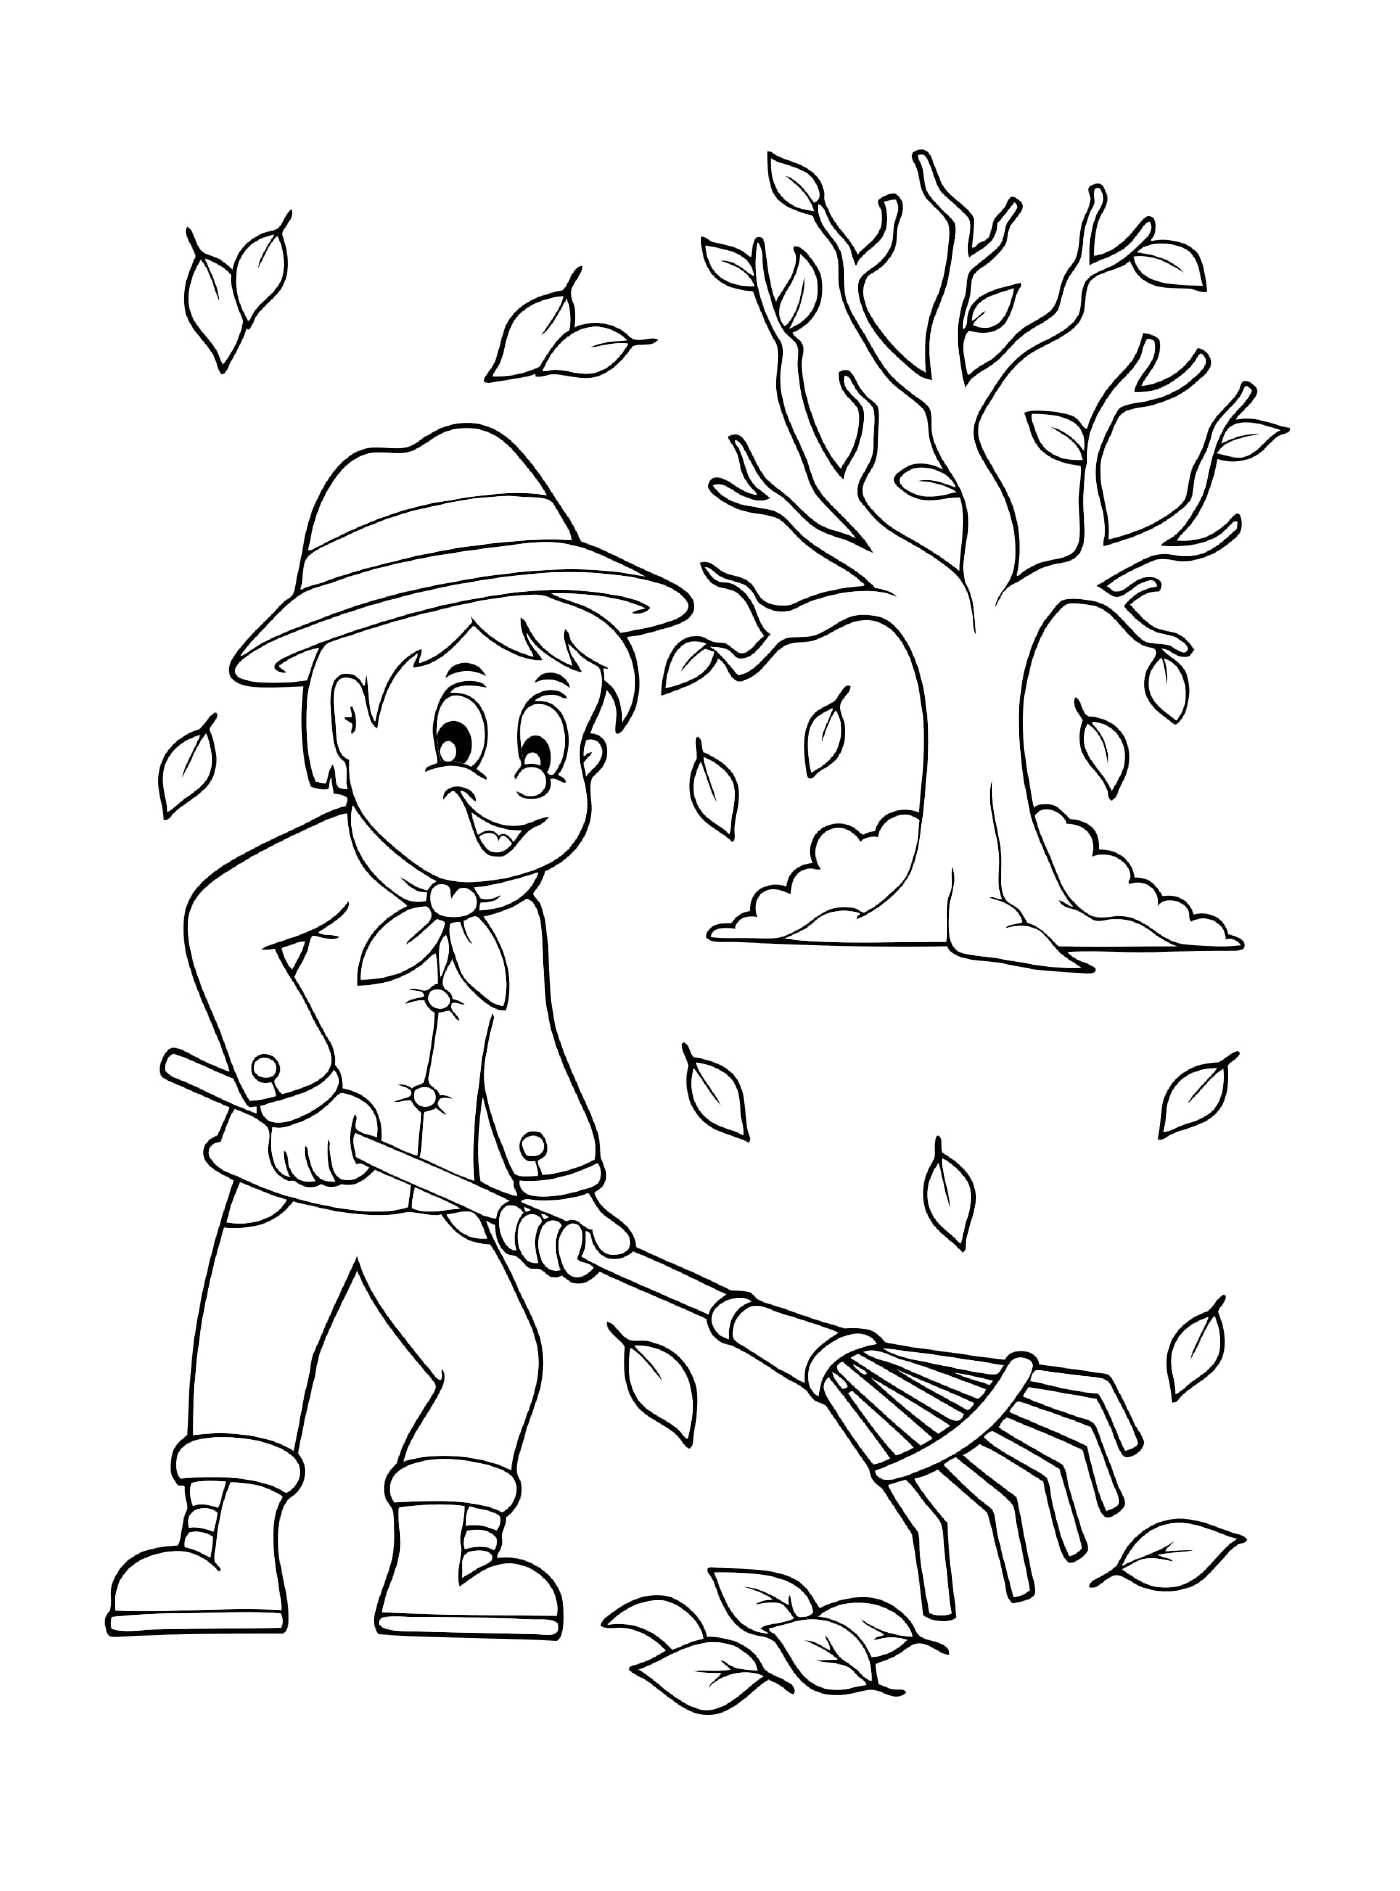  Ein Kind ratifiziert die Blätter im Herbst 